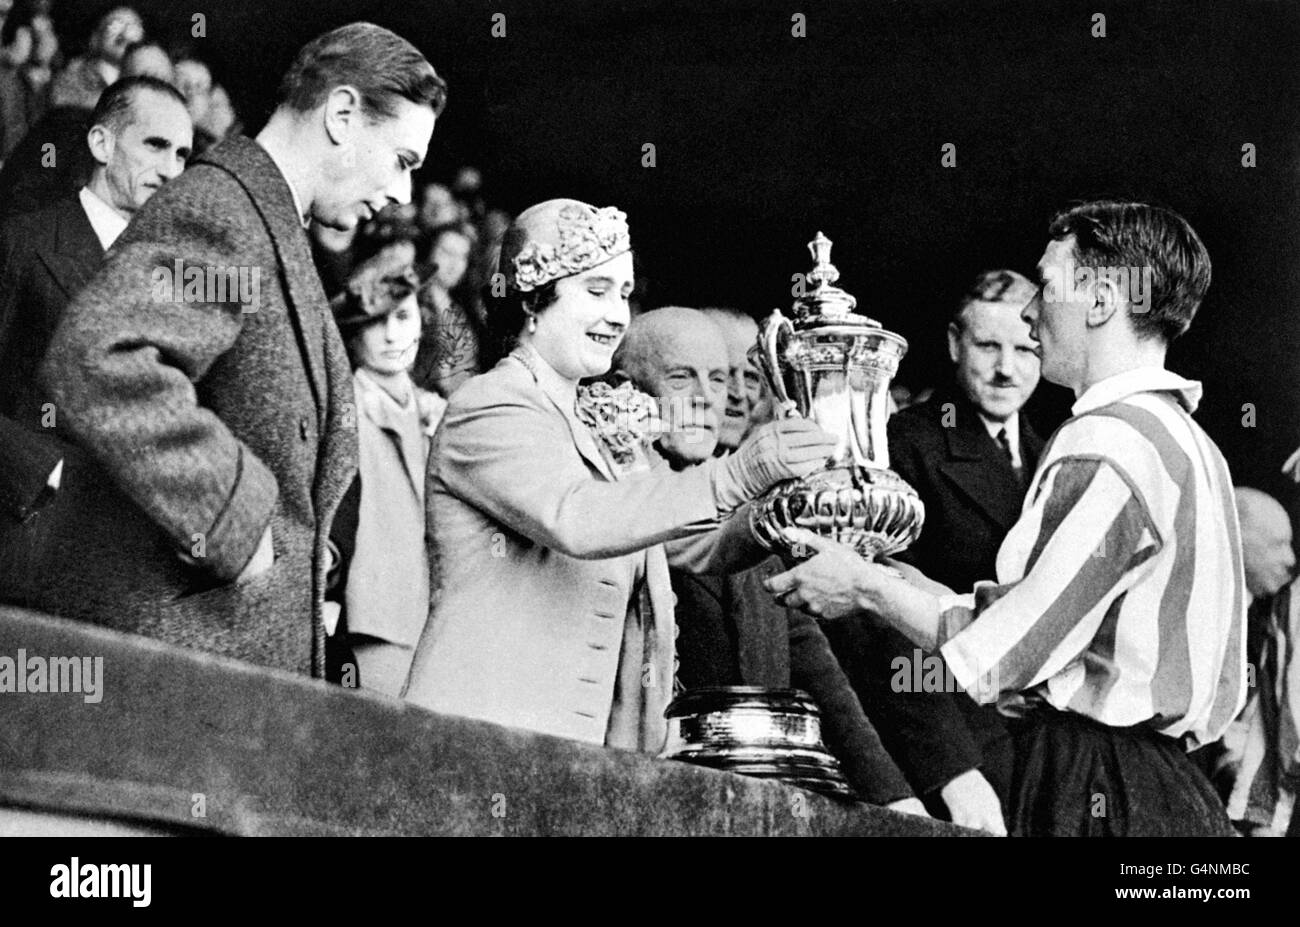 Calcio - fa Cup - finale - Sunderland / Preston North End - Wembley - 1937. Il capitano di Sunderland Raich carter (r) riceve la fa Cup dalla regina (c) Foto Stock